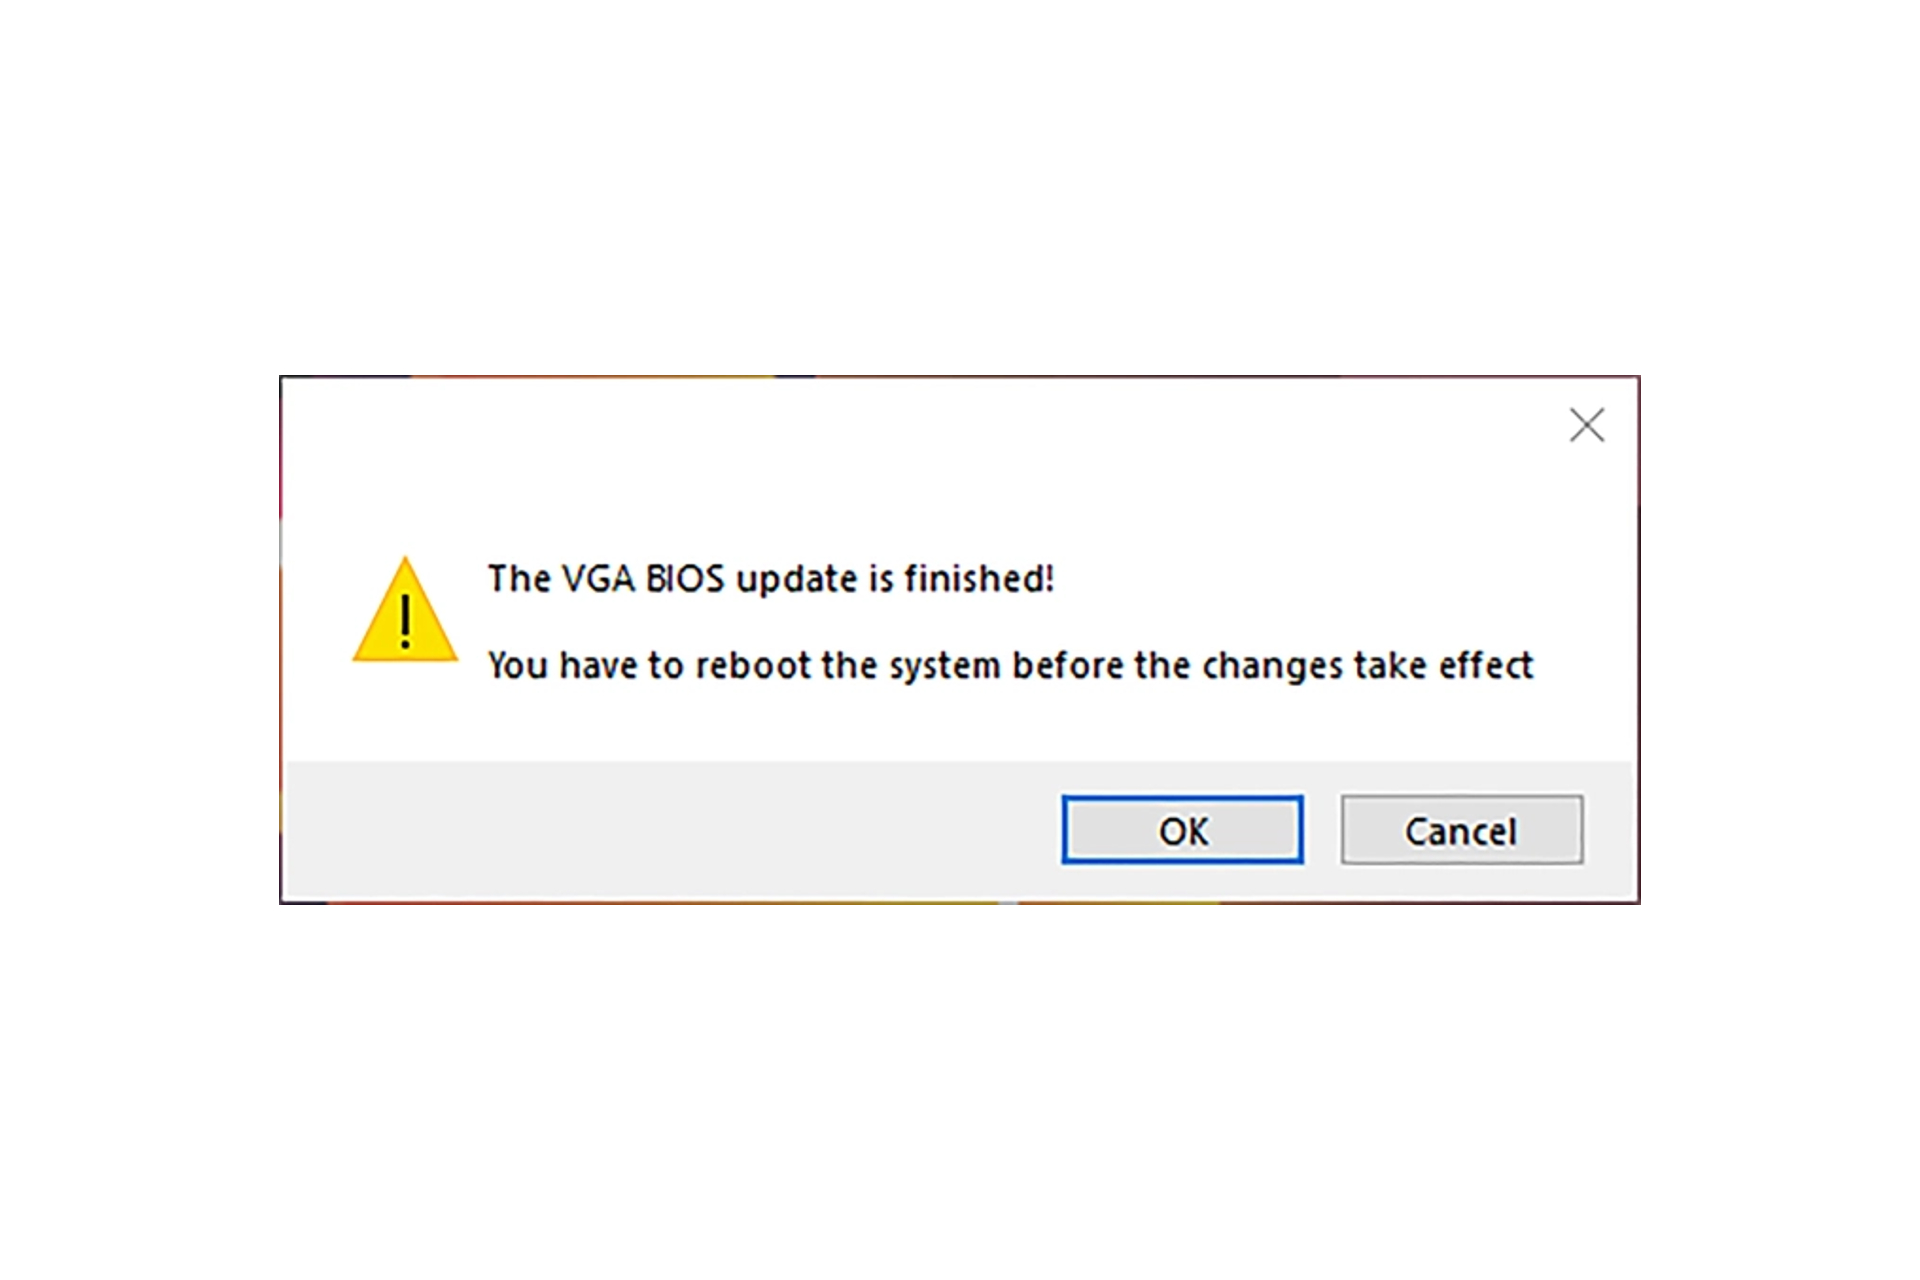 Notificação de atualização do BIOS VGA concluída.